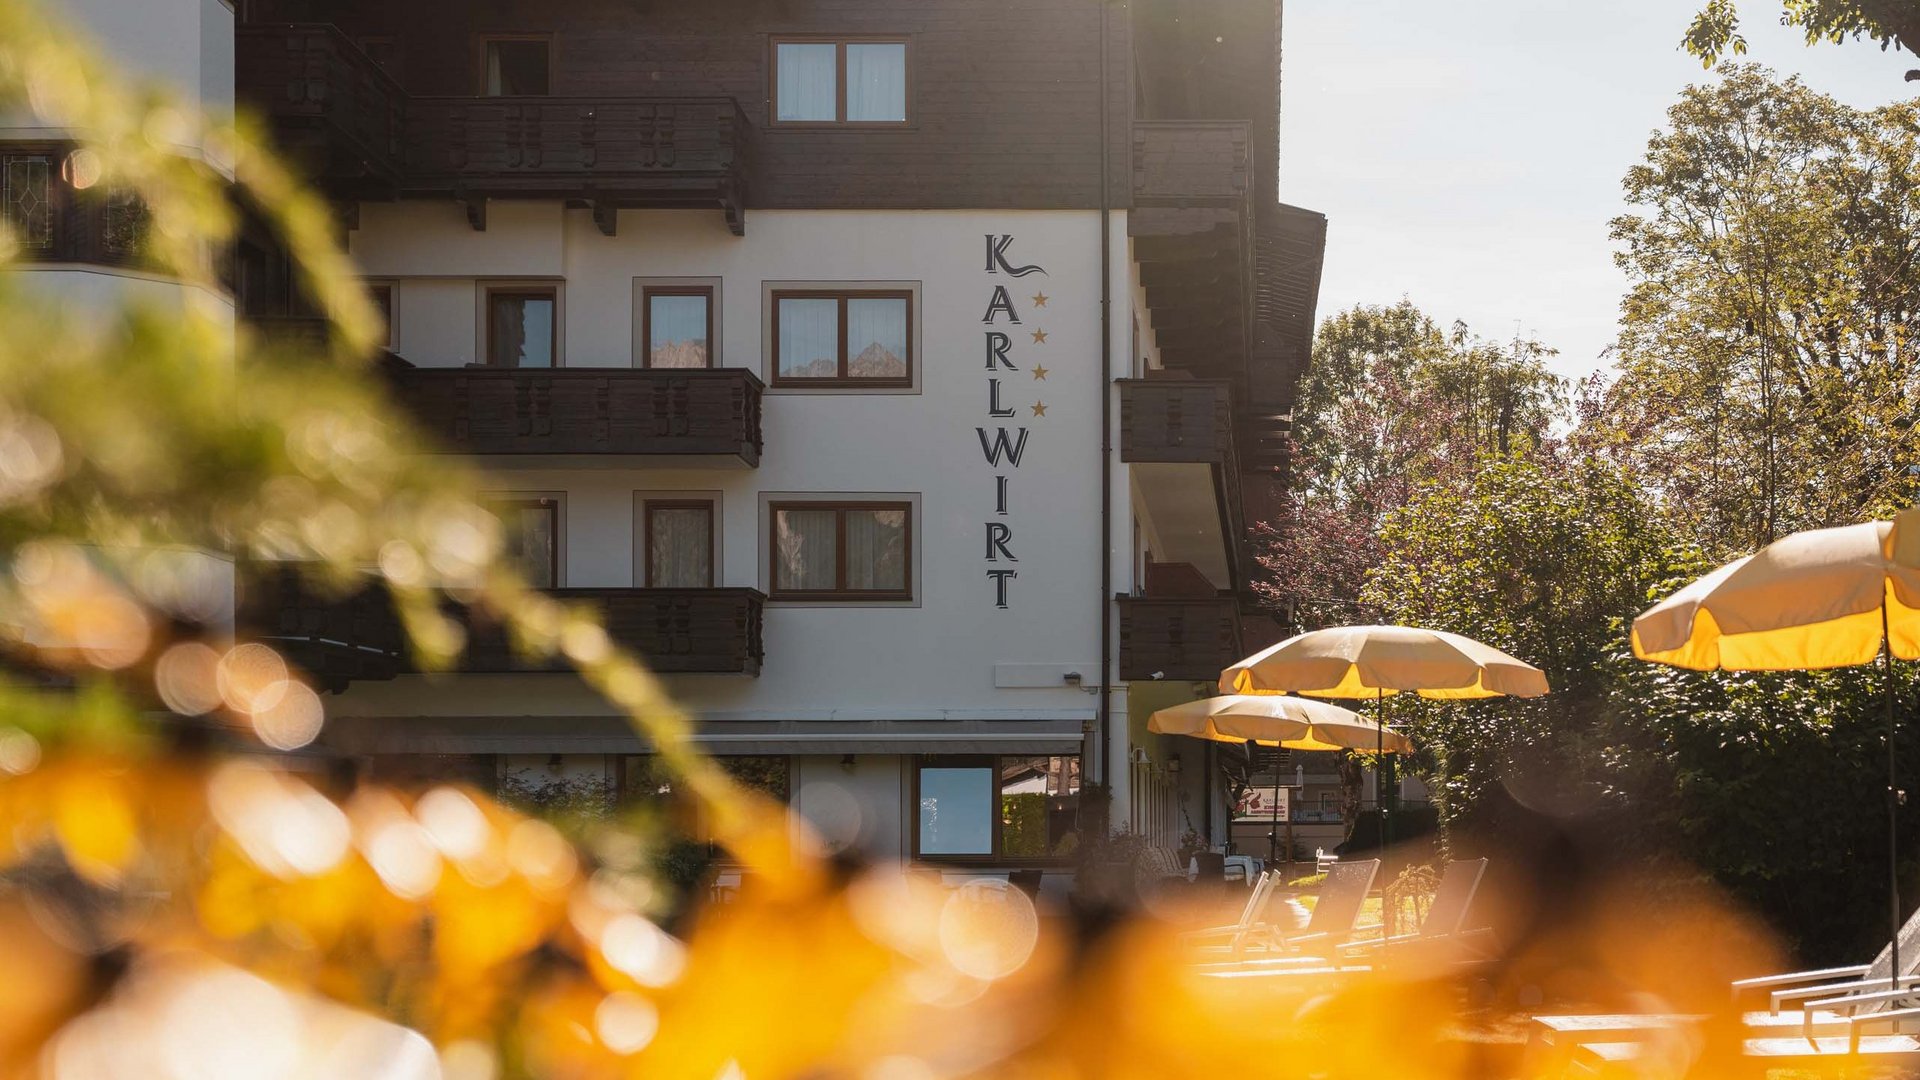 Hotel Karlwirt: a warm welcome!